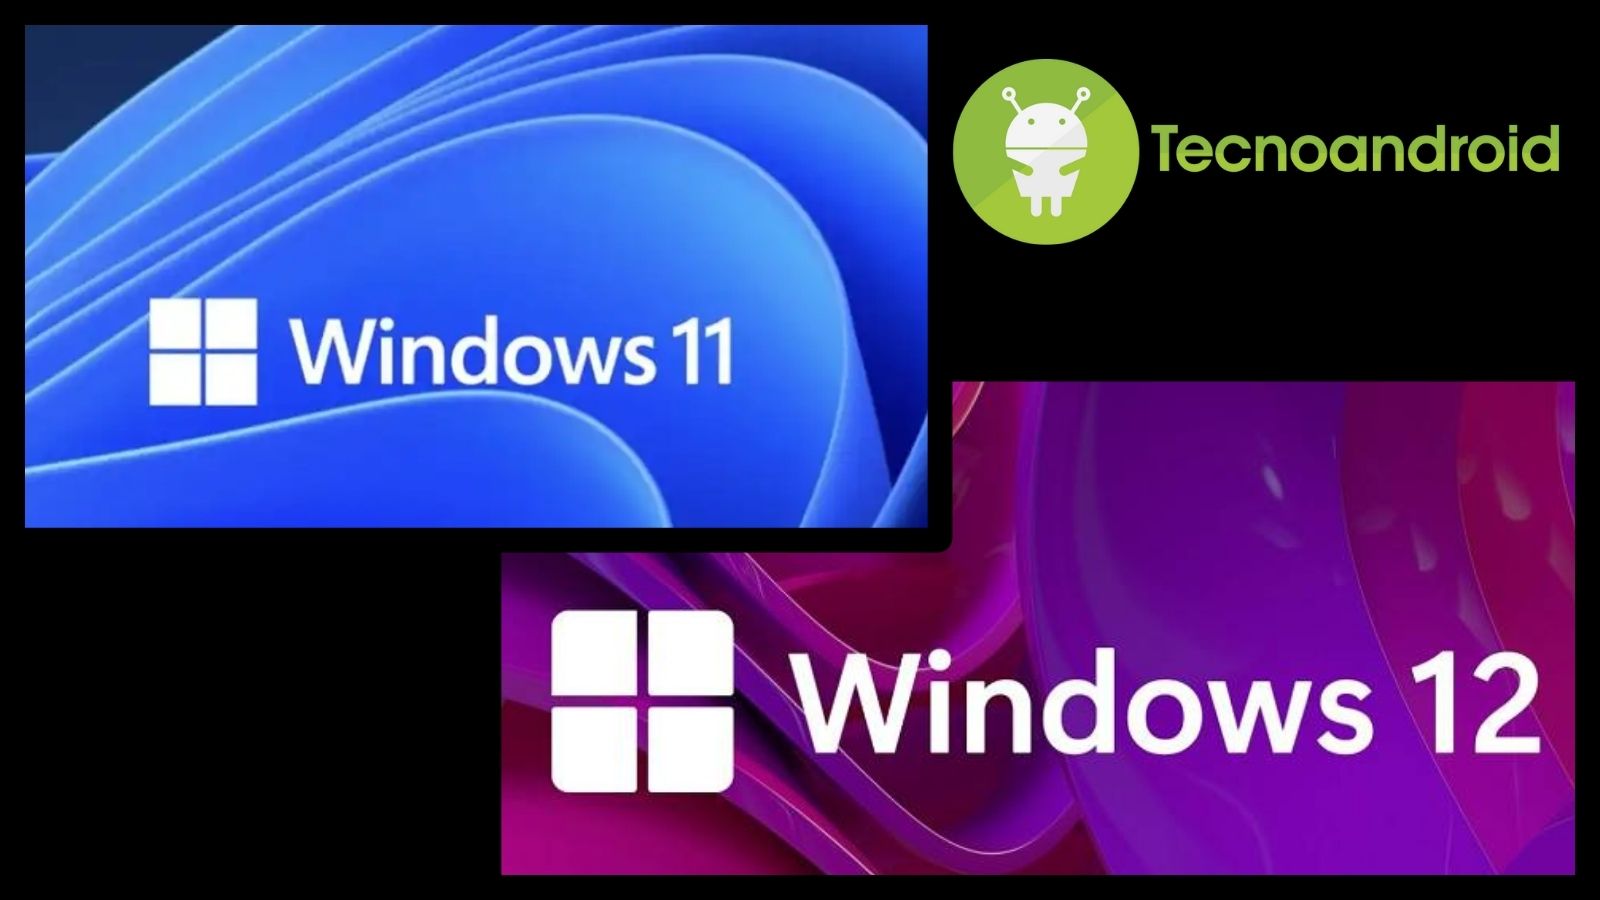 E' in arrivo un nuovo aggiornamento di Windows, introdurrà il nuovo Windows 12 oppure è soltanto un aggiornamento della versione attuale?